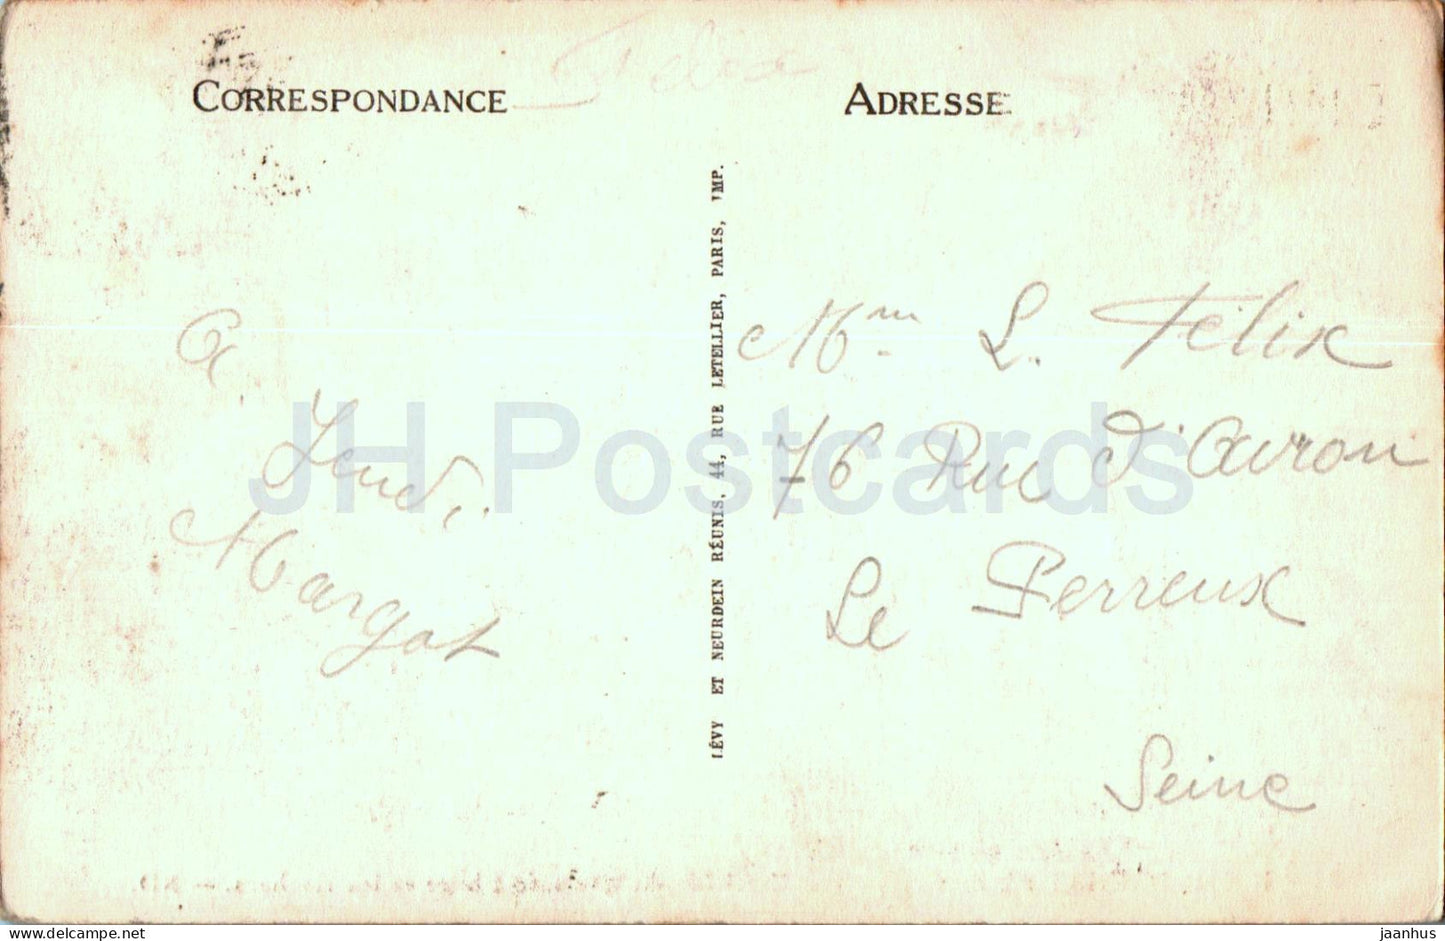 Ile de Brehat - Vue Générale du Paon - Le Phare et les Rochers - phare - 31 - carte postale ancienne - France - occasion 